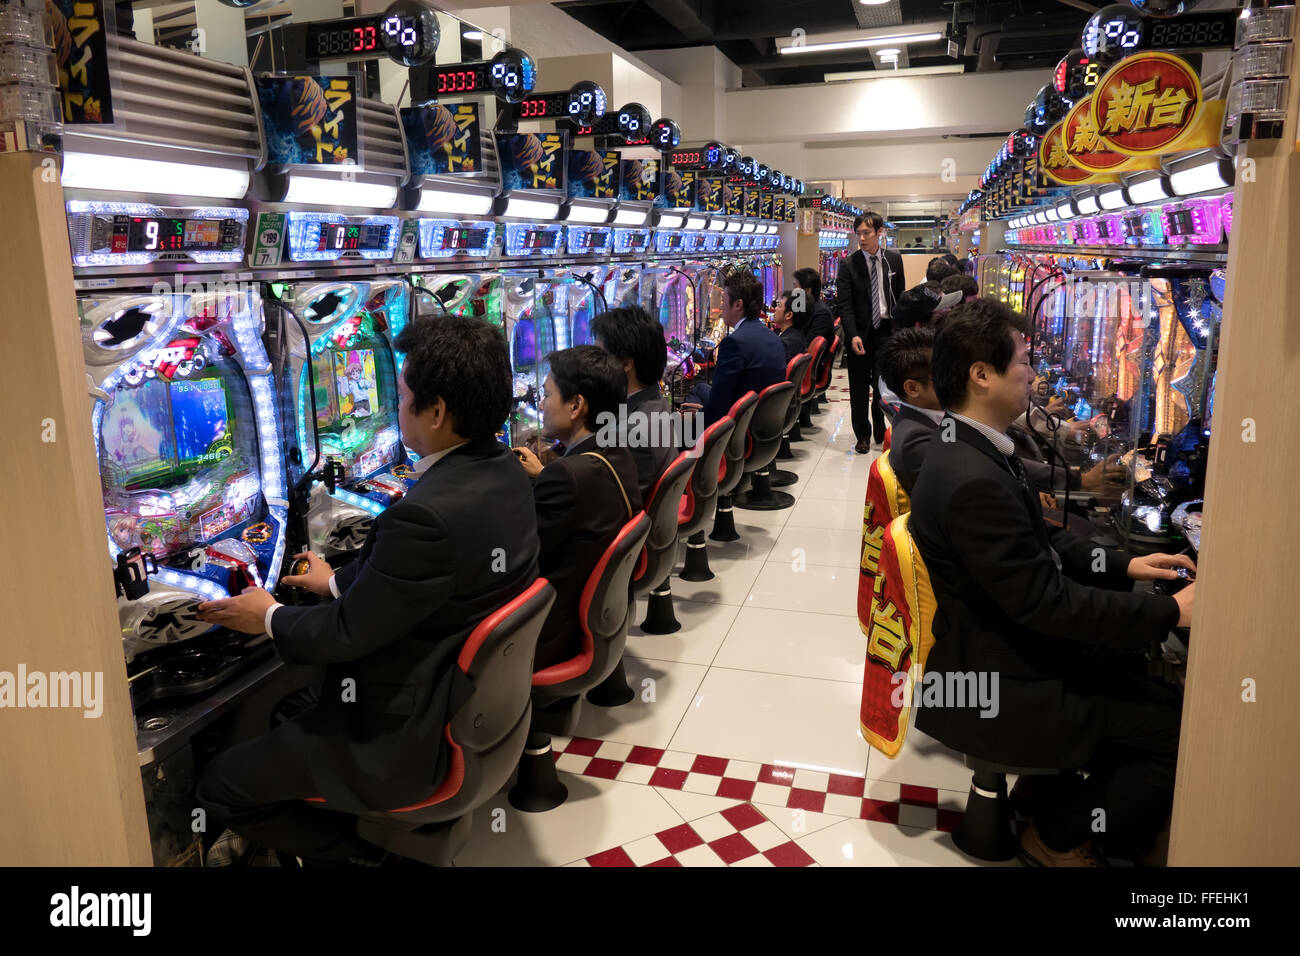 Japan Gambling